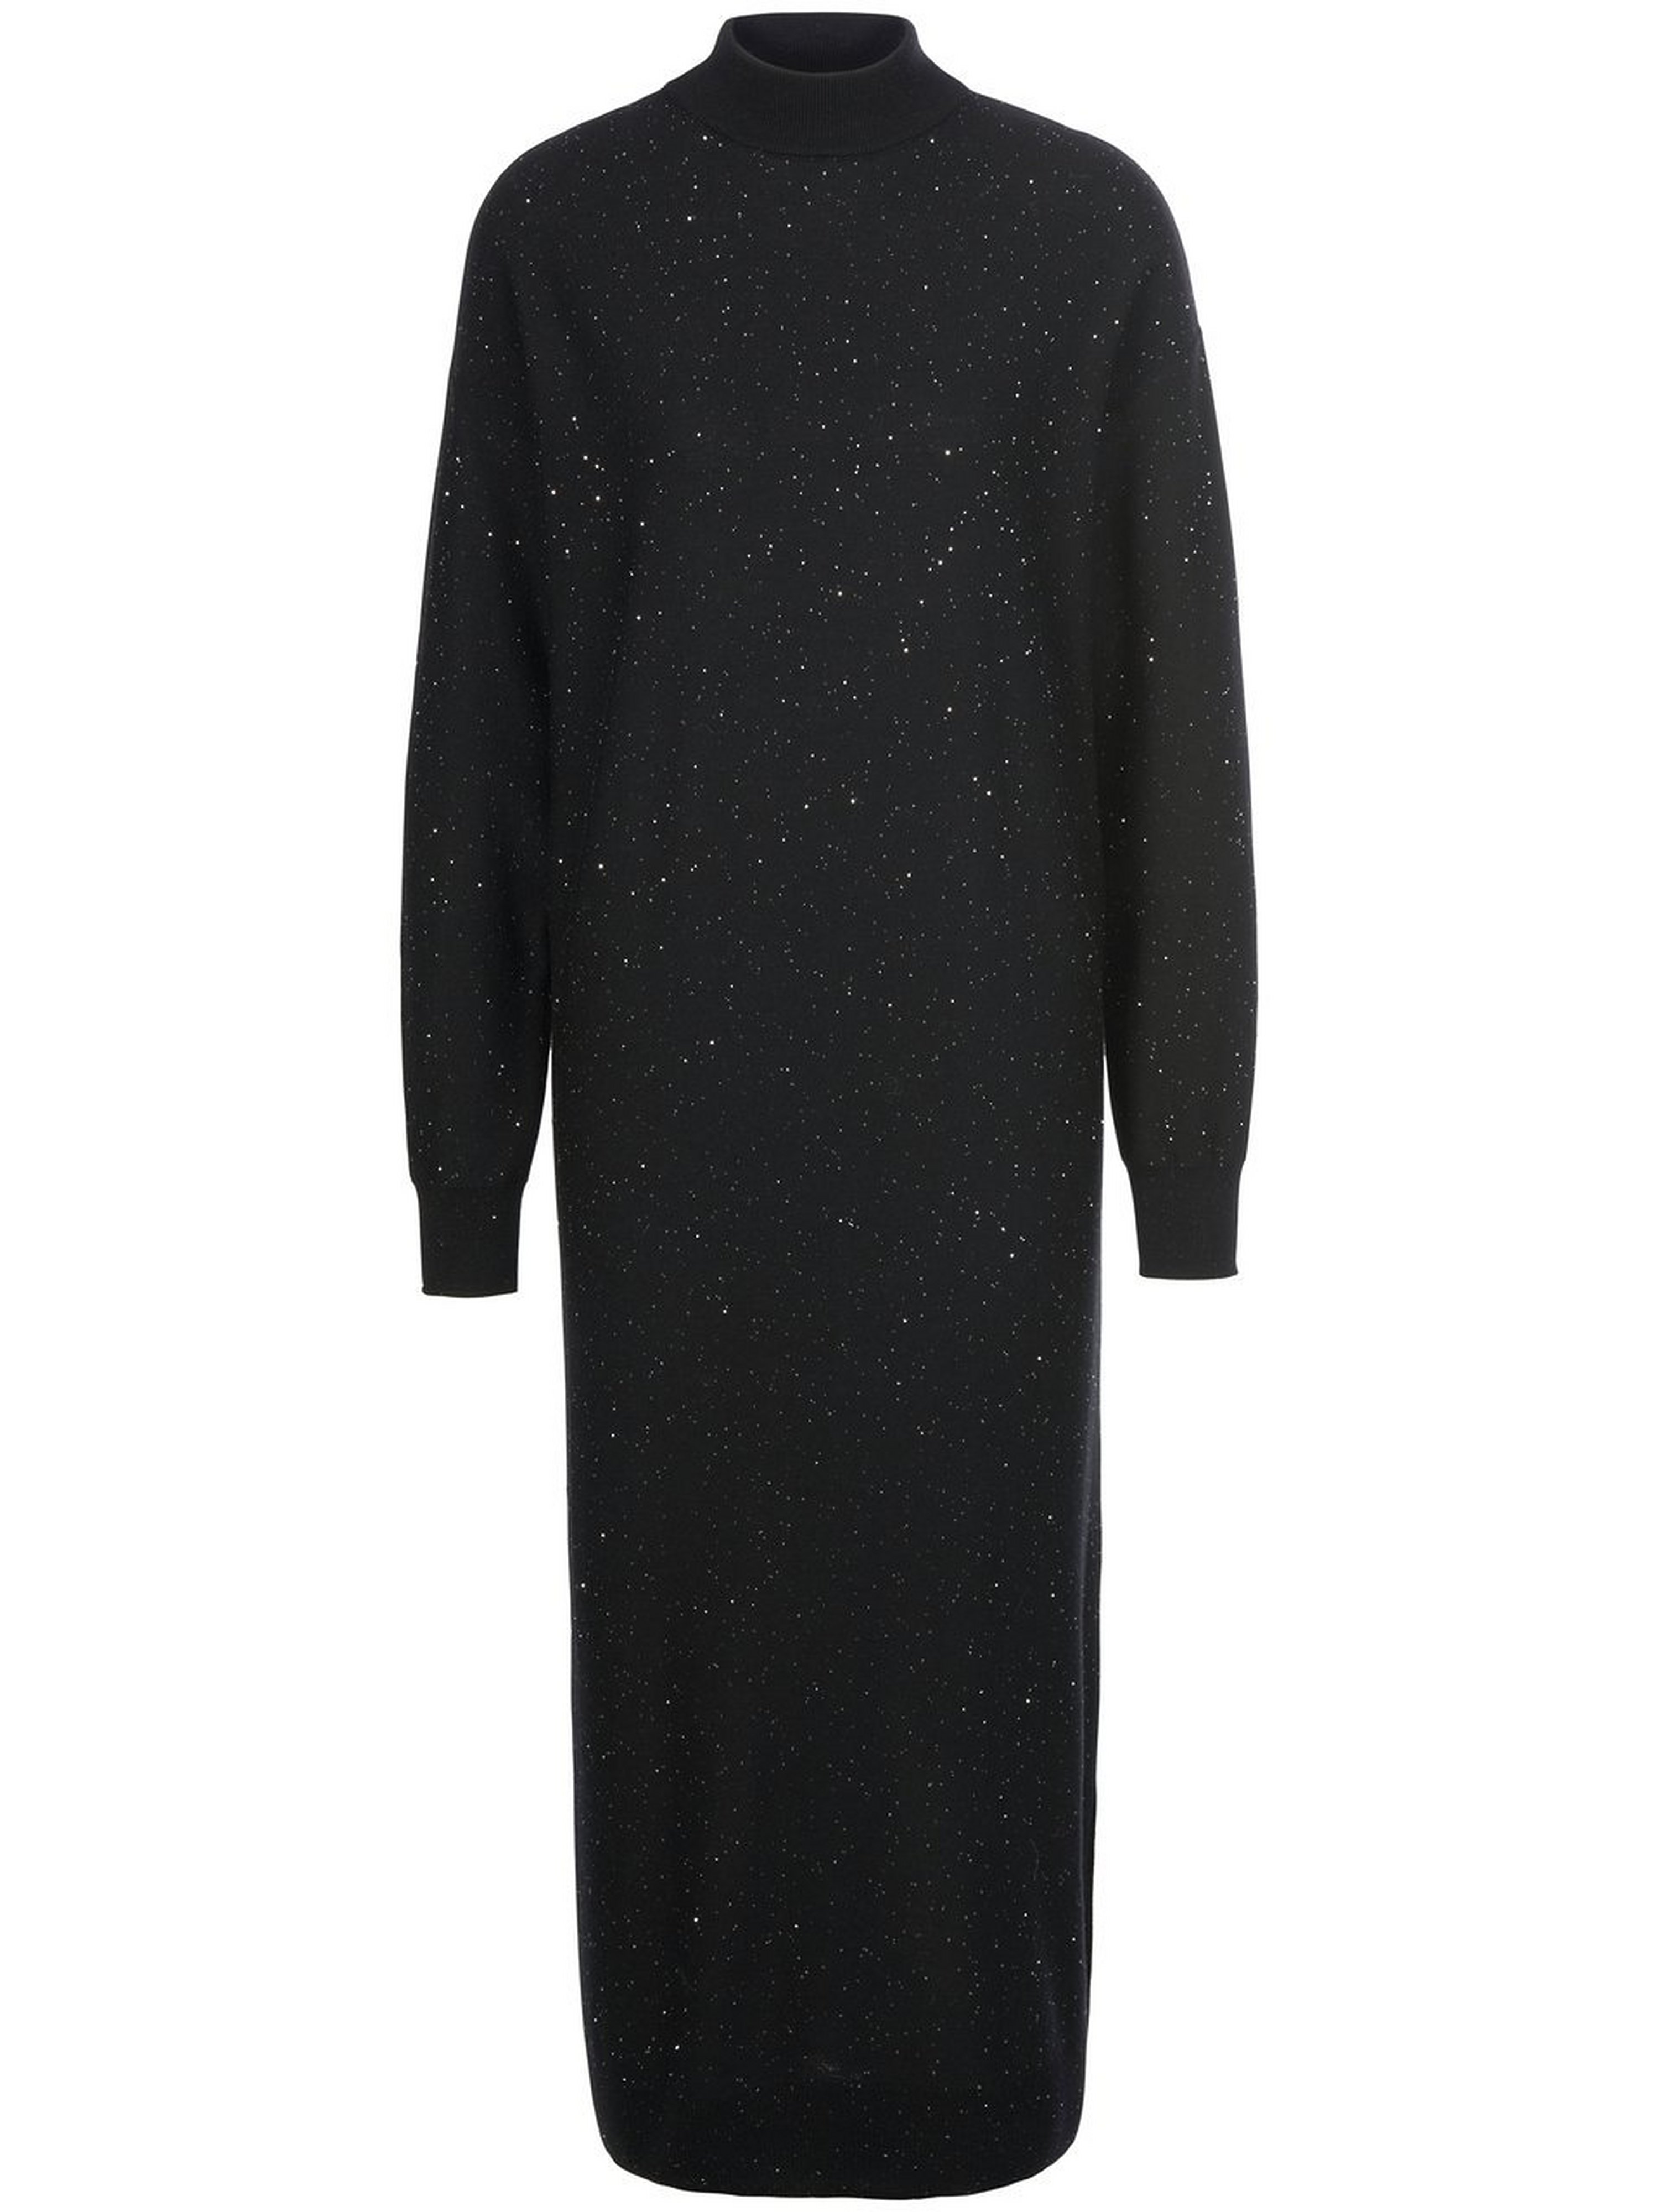 La robe maille 100% laine vierge  TALBOT RUNHOF X PETER HAHN noir taille 46